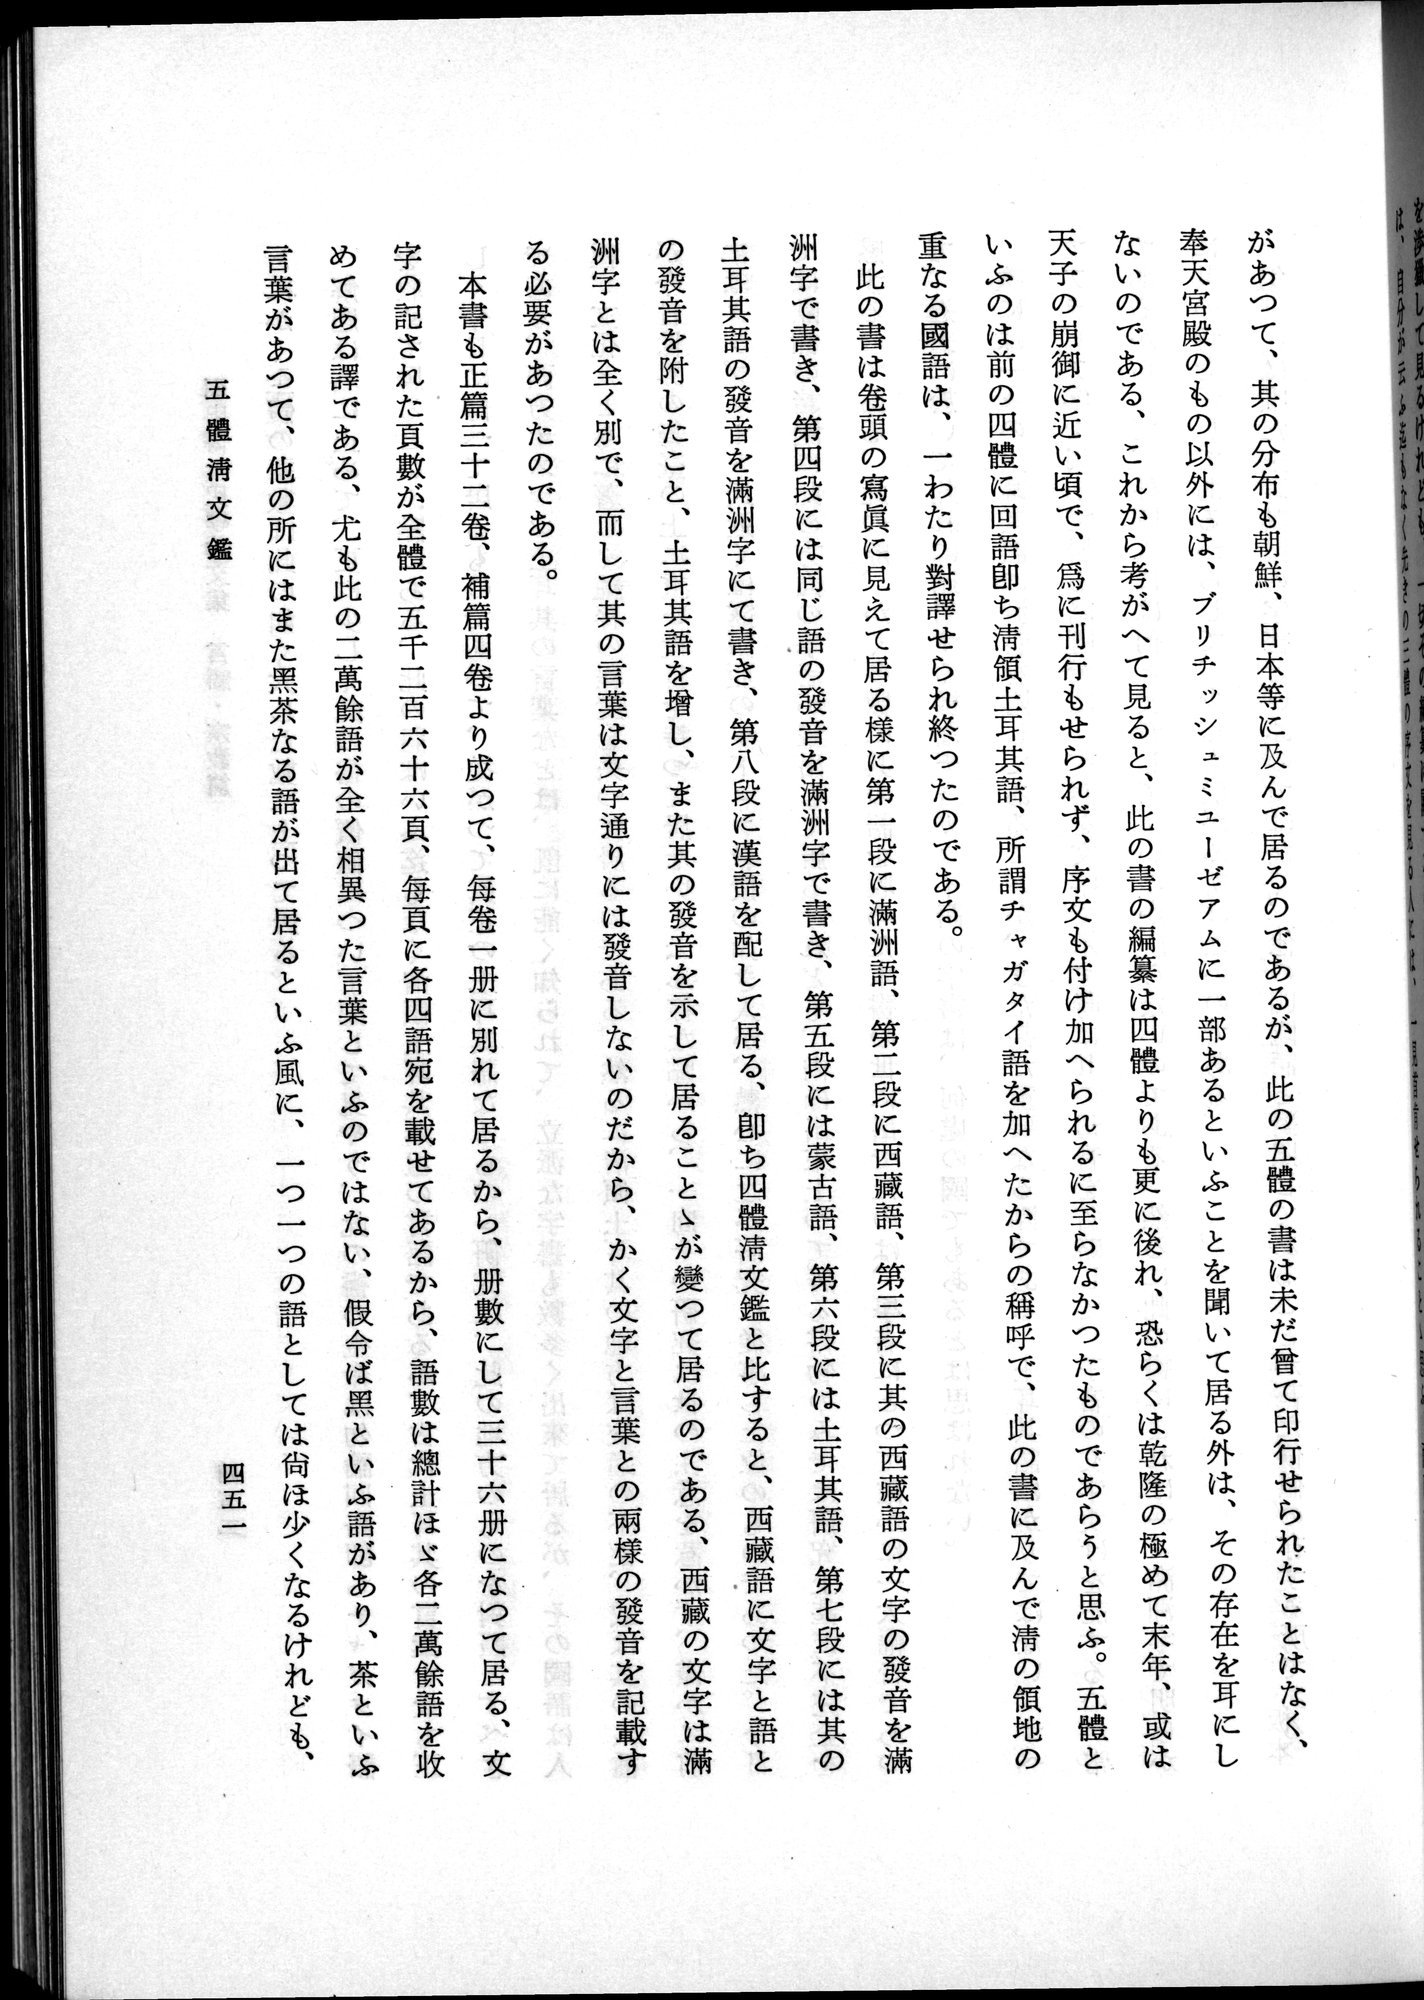 羽田博士史学論文集 : vol.2 / Page 513 (Grayscale High Resolution Image)